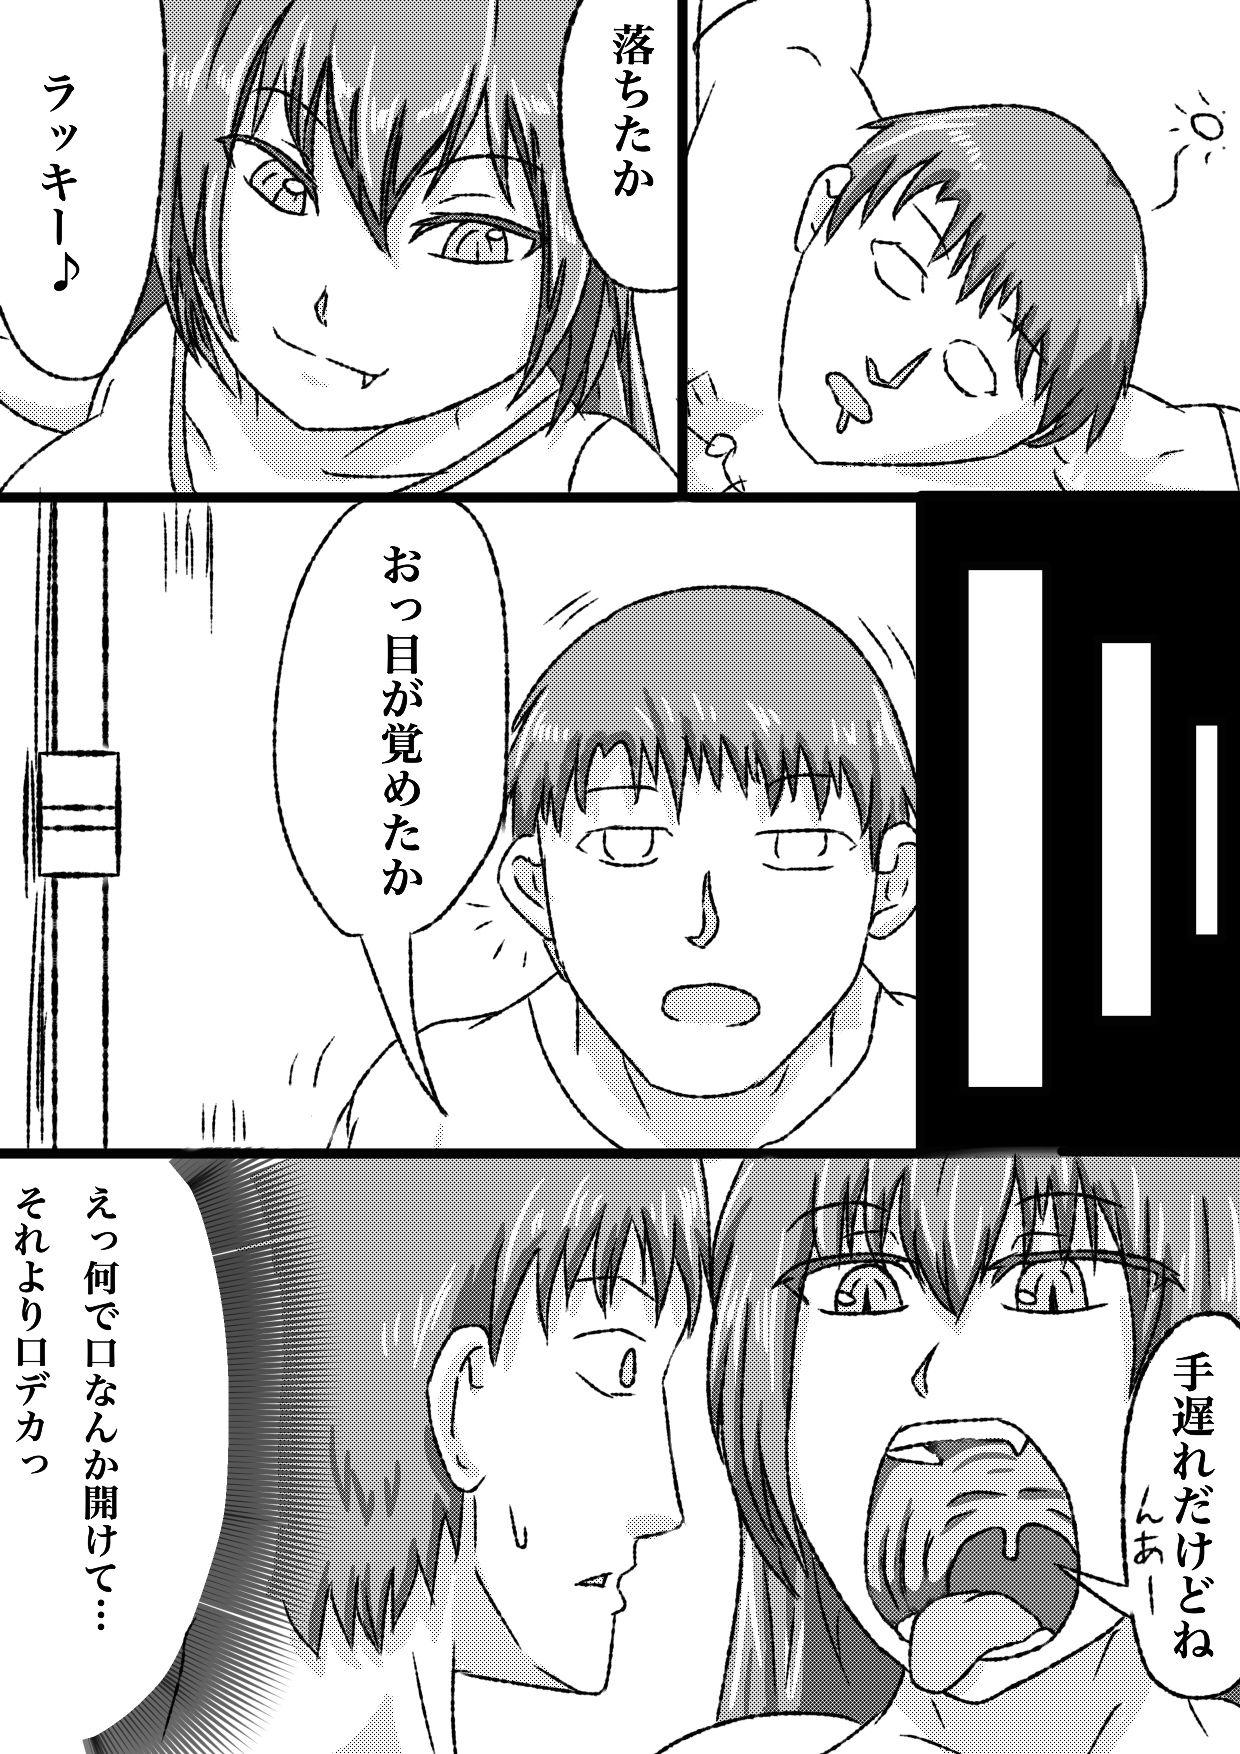 Follada uchi no ko marunomi manga - Original Gay Outdoor - Page 4